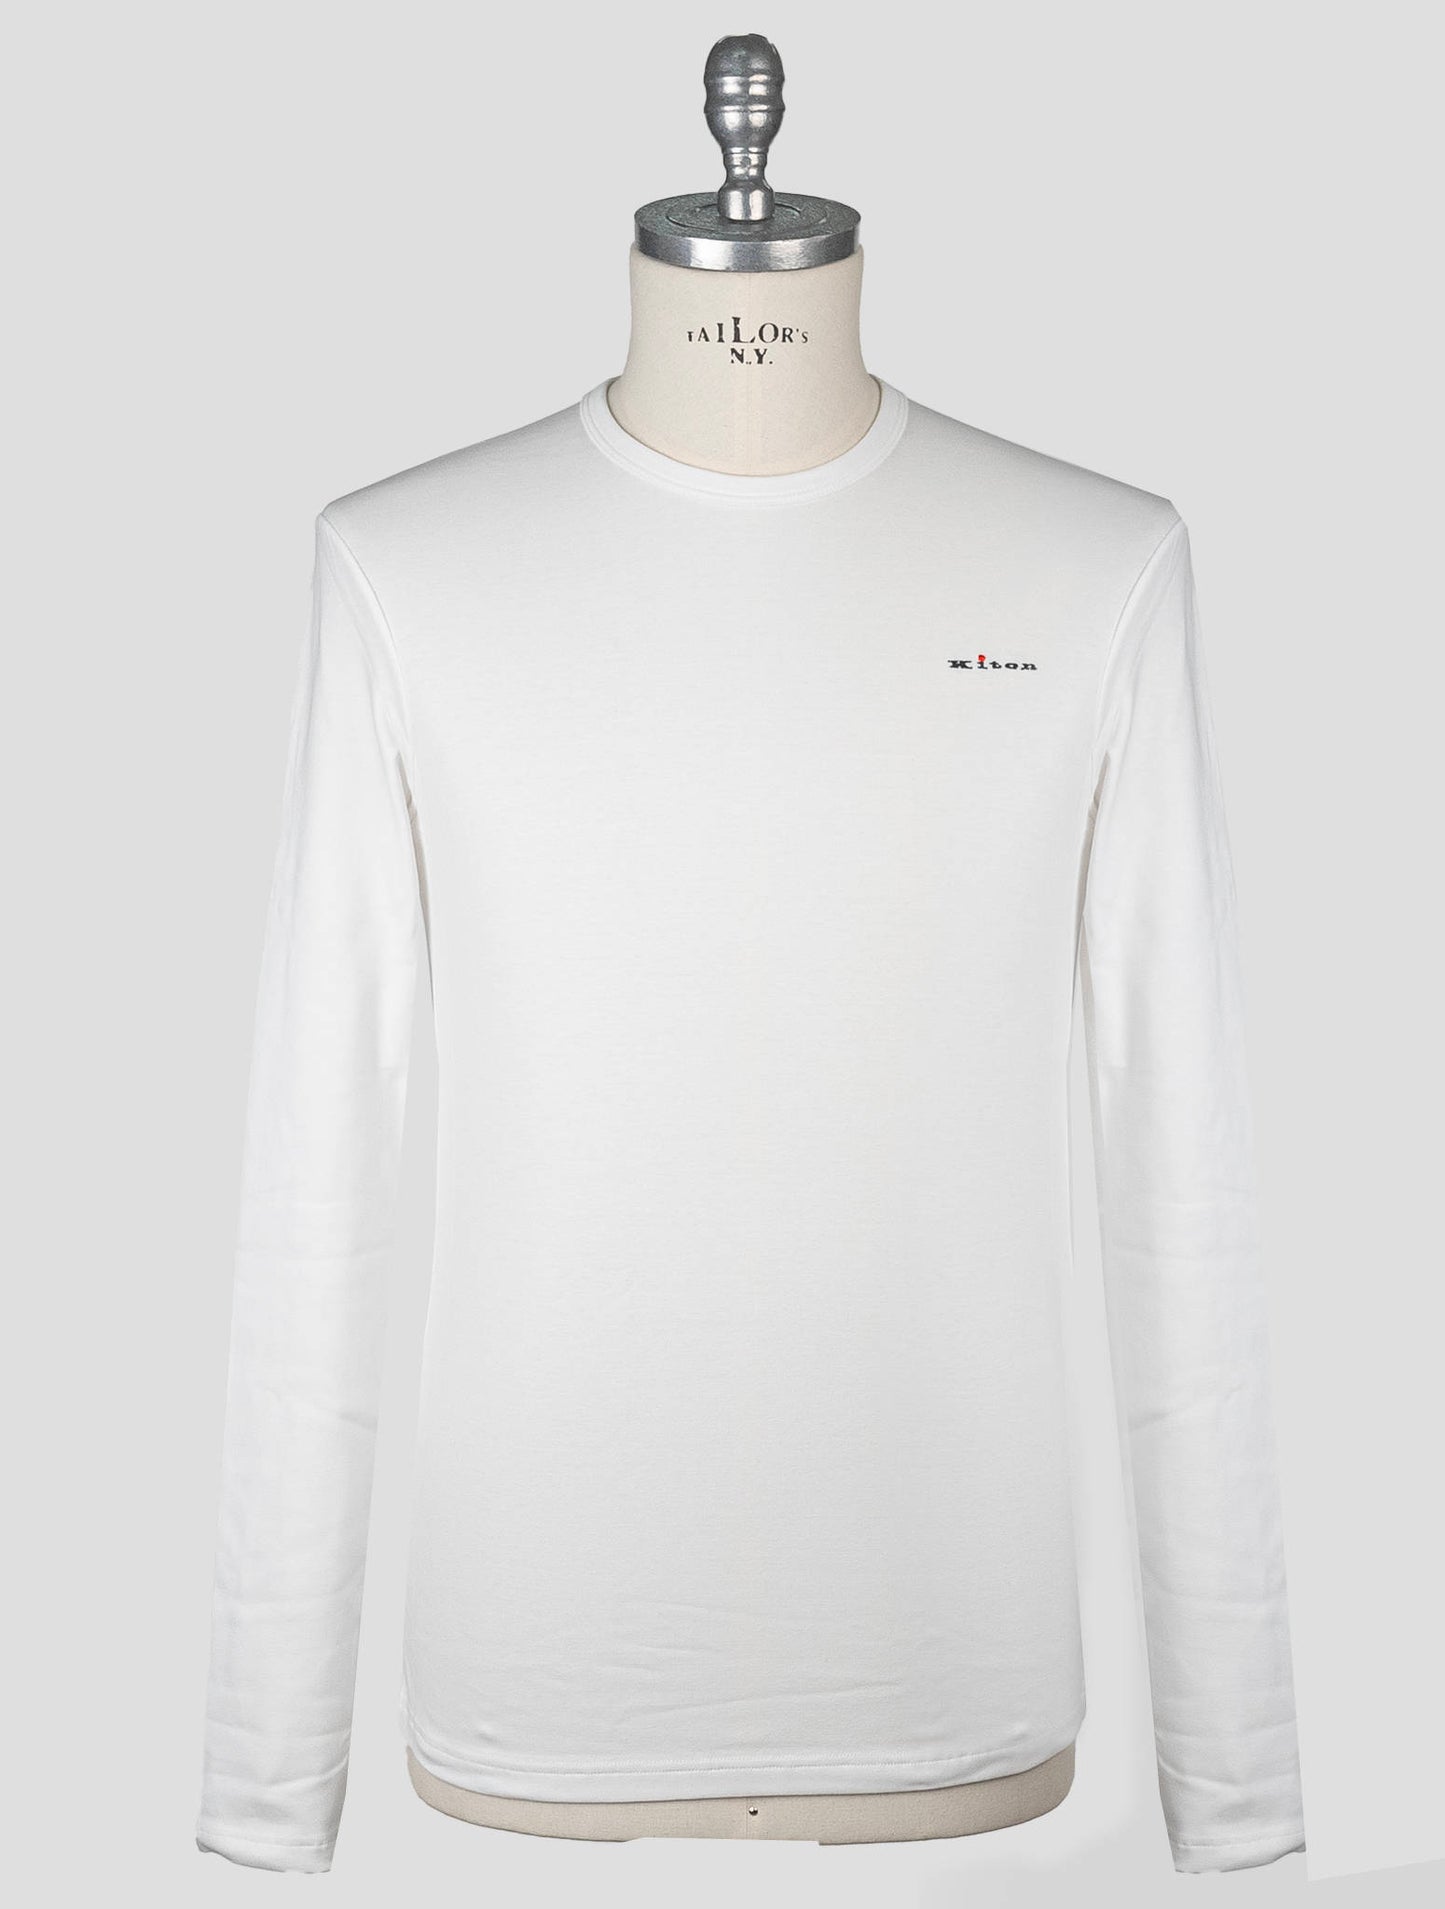 Kiton Weiße Baumwolle Ea T-Shirt Unterwäsche Langarm